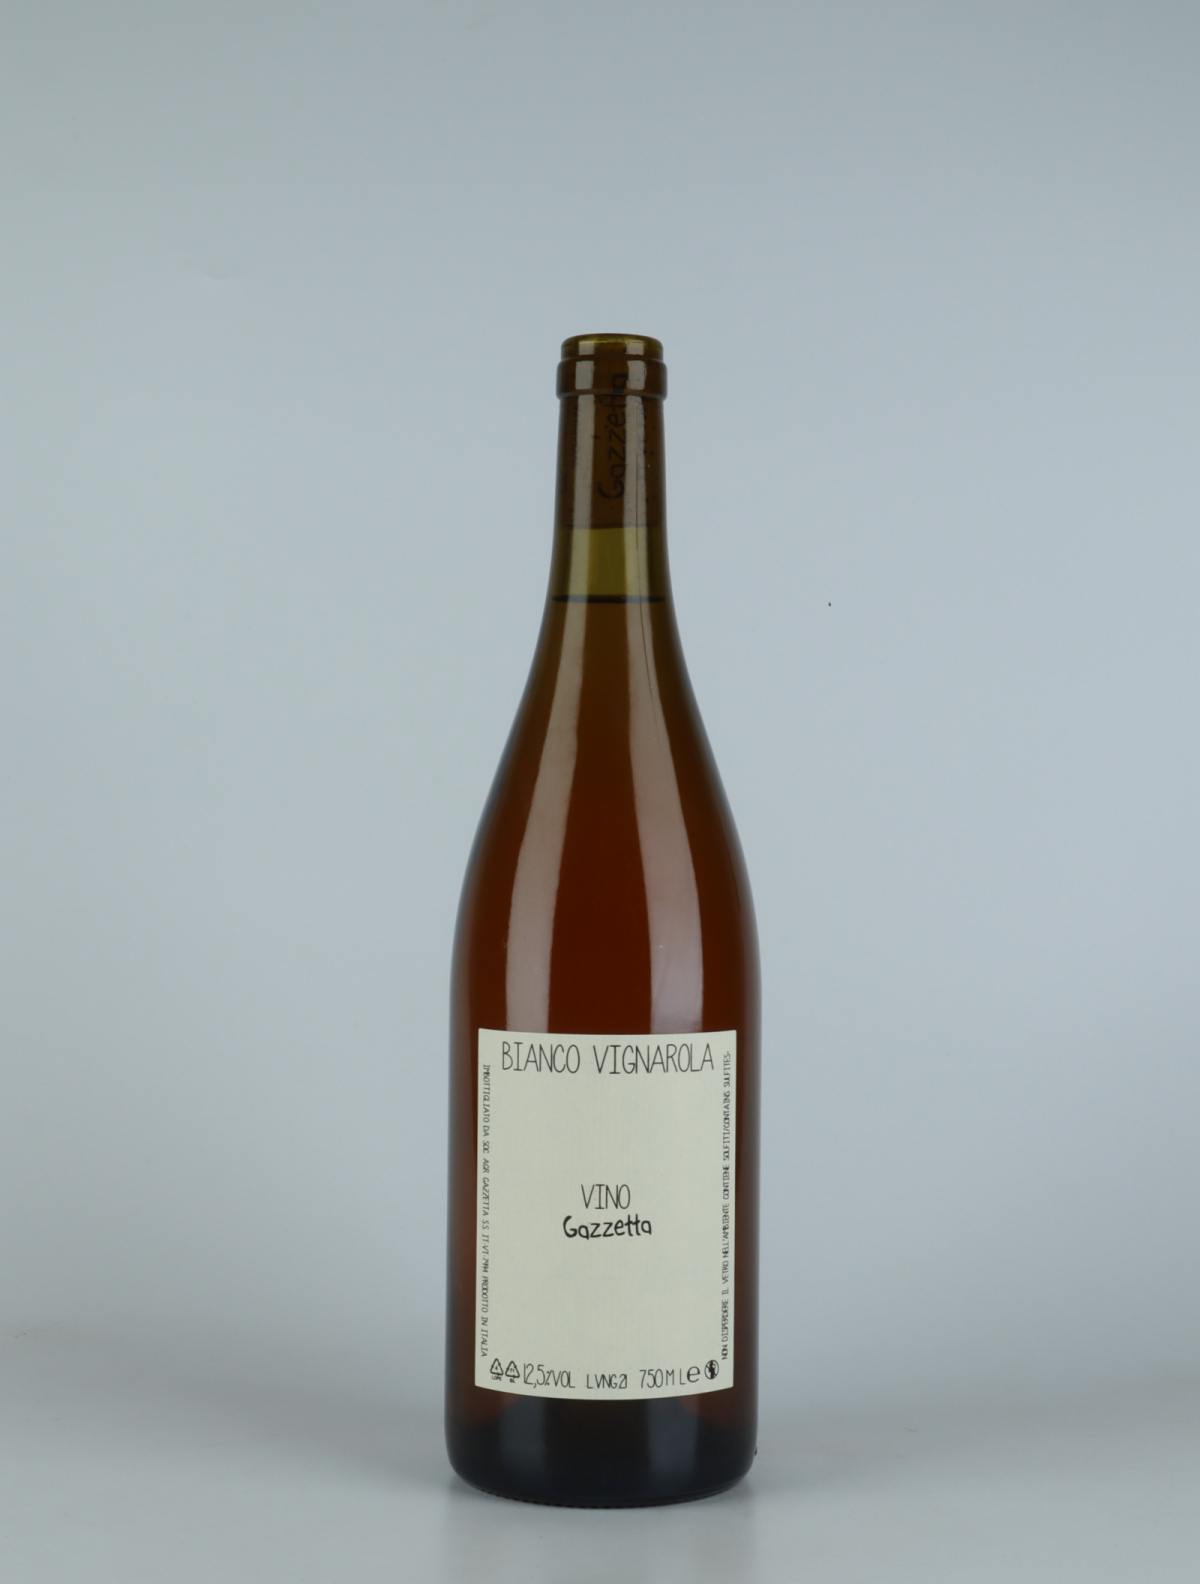 A bottle 2021 Vino Bianco Vignarola Orange wine from Gazzetta, Lazio in Italy